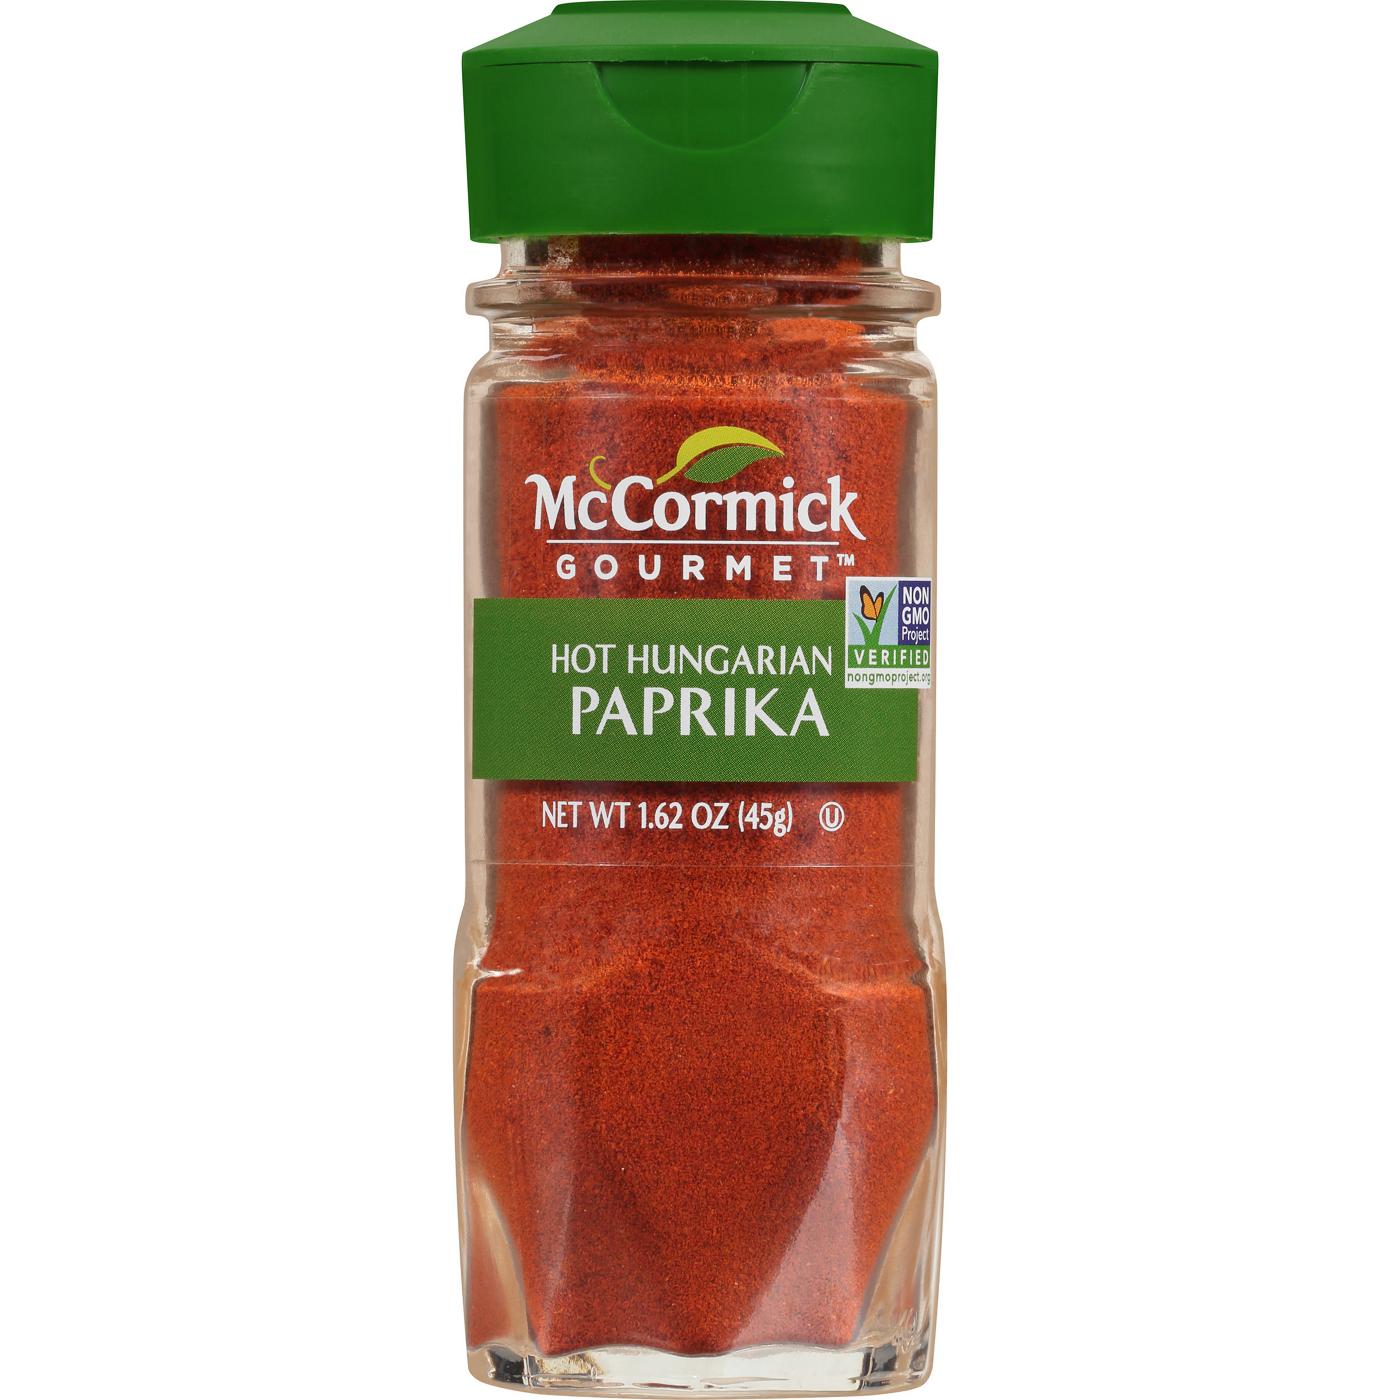 McCormick Gourmet Hot Hungarian Paprika; image 1 of 4